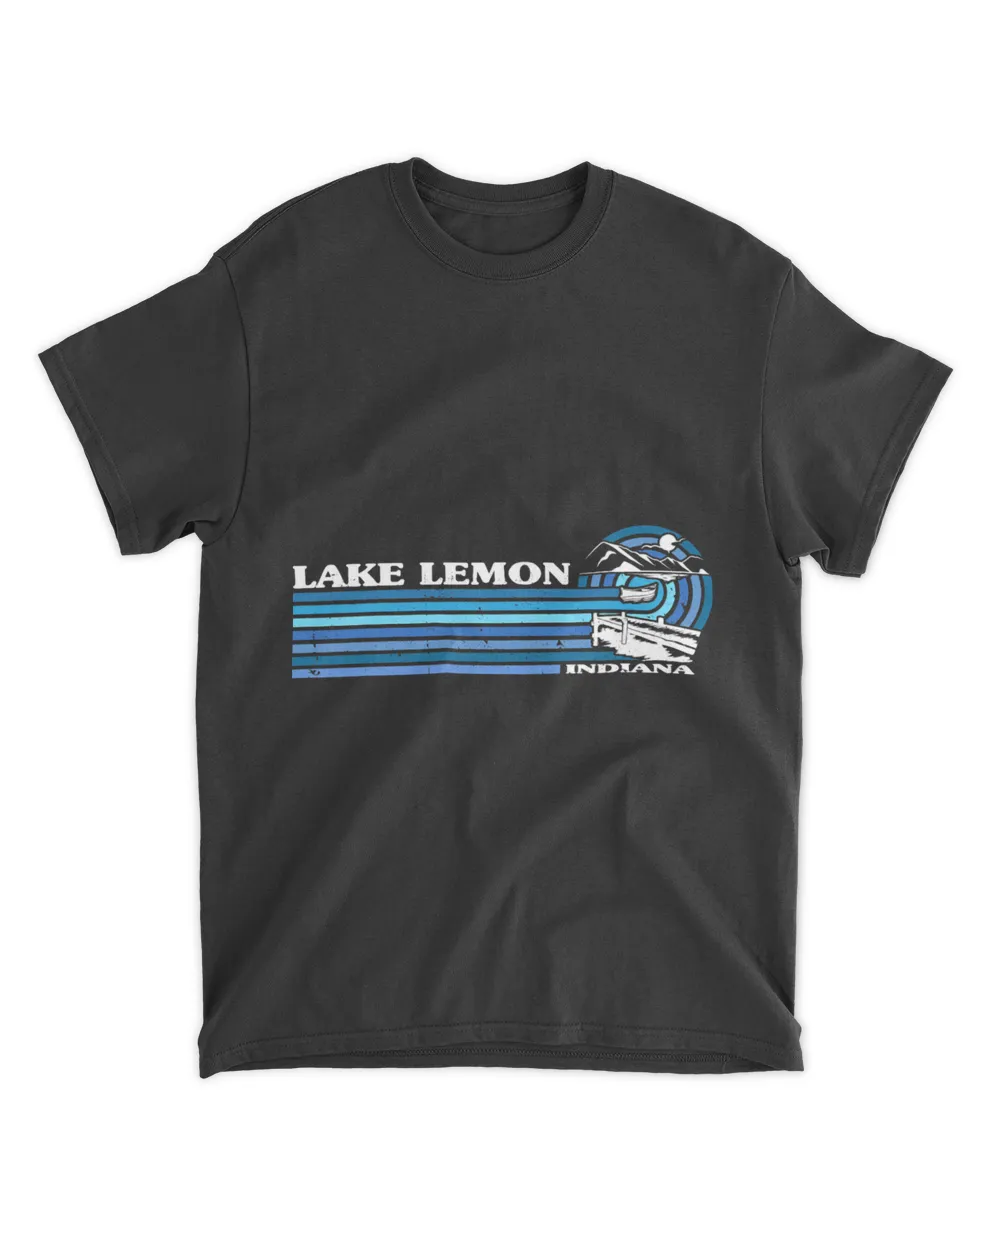 Camping Camp Fishing Boating Camping Lake Vacation Lake Lemon Camper